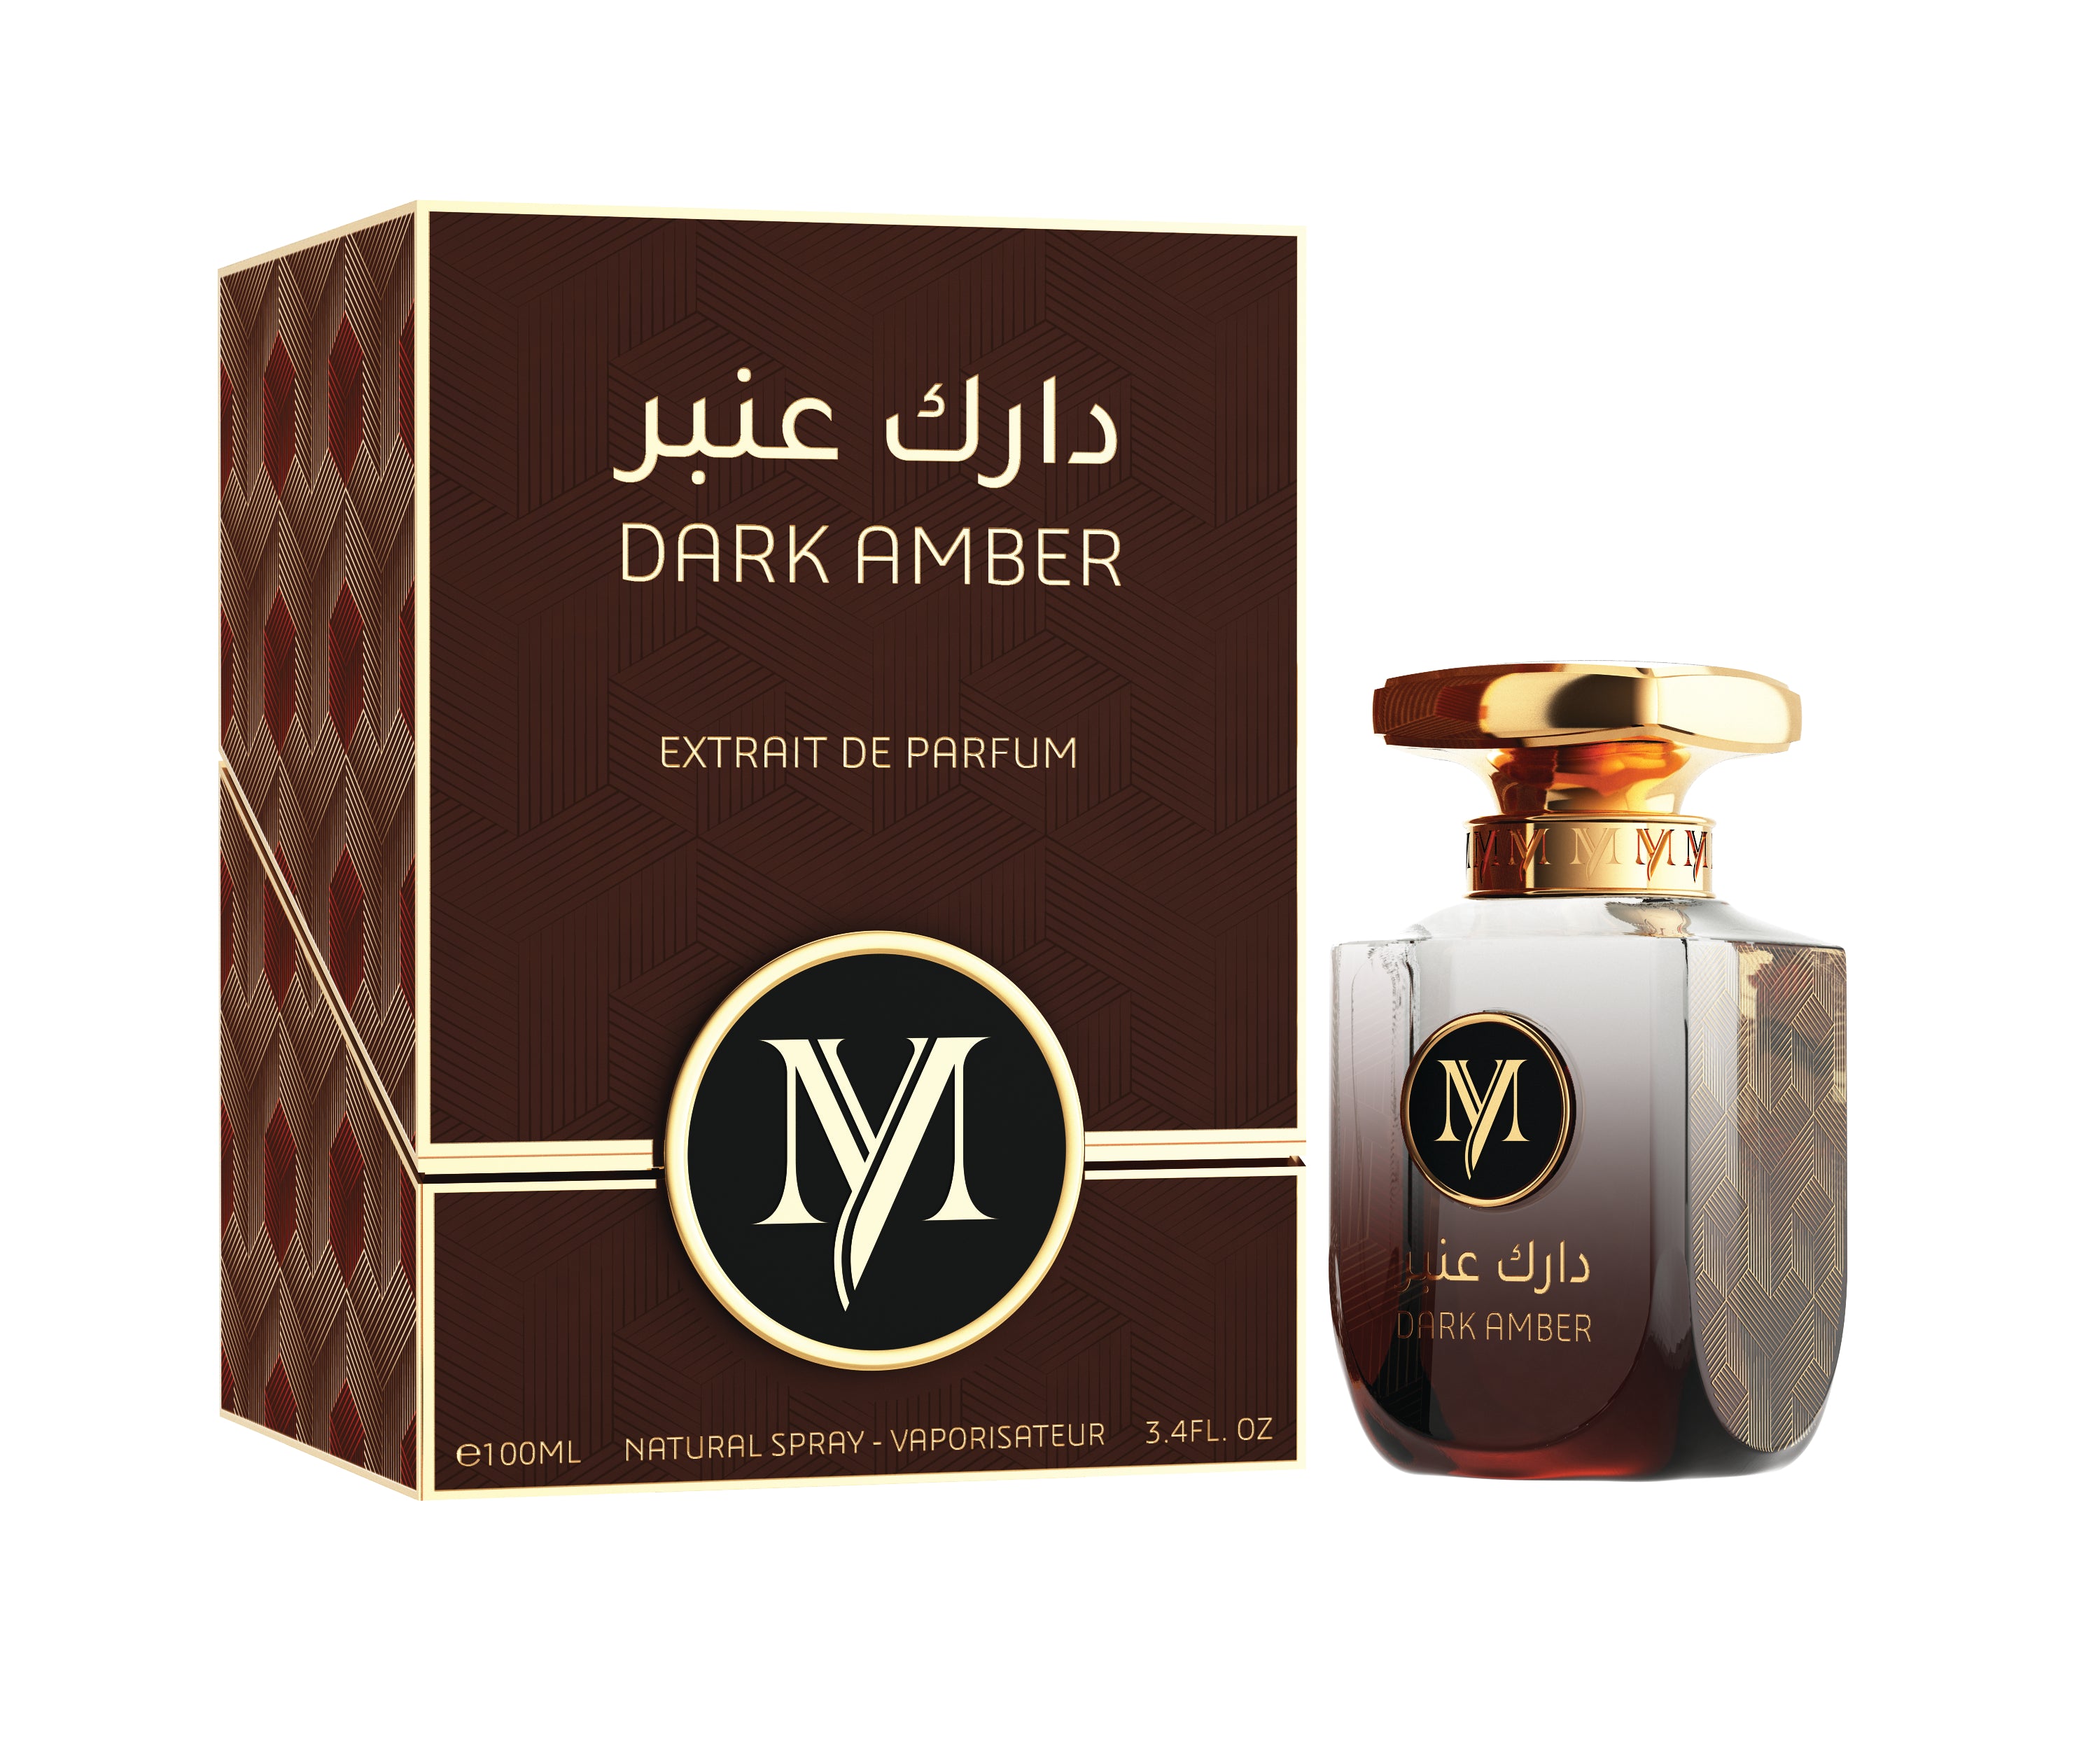 Nachfüllung für Parfüm Mael , Amber-Vanille, 200ml